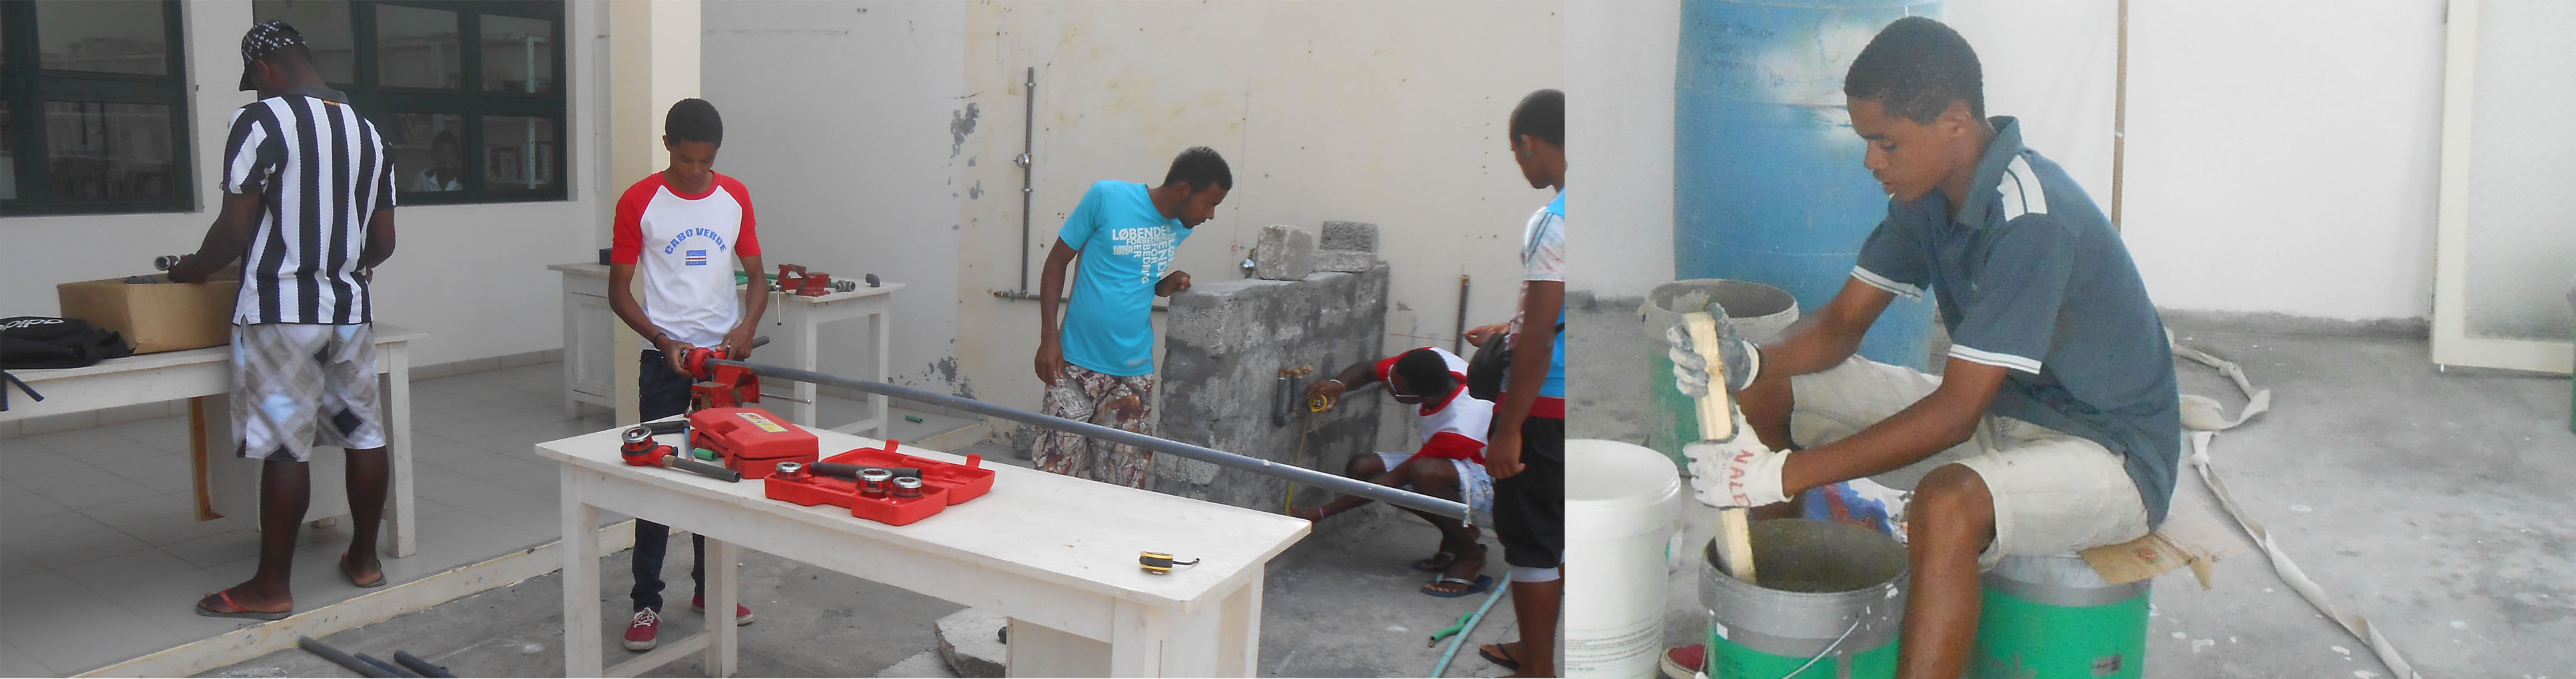 Fotografie di studenti impegnati in prove pratiche di impianti idraulici e preparazione del cemento